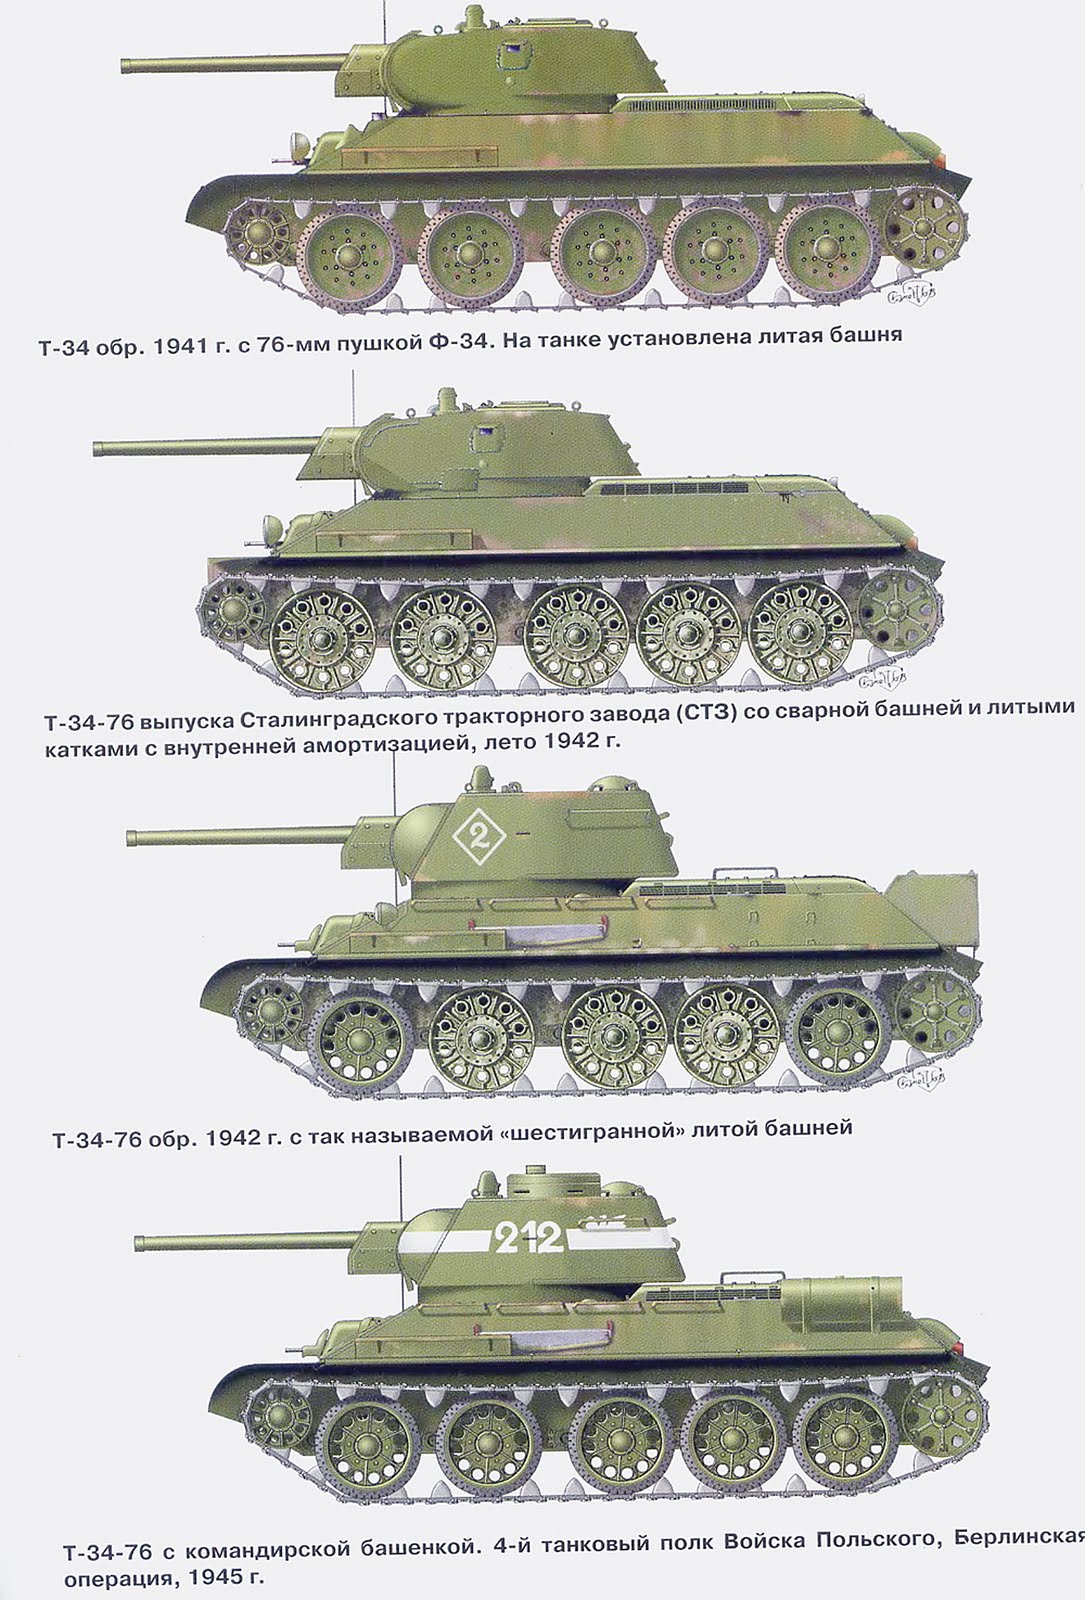 Название техники ссср. Т-34 образца 1941 вид сбоку. Танки второй мировой войны СССР т34. Танк СССР Т-34. Эволюция танка т-34.